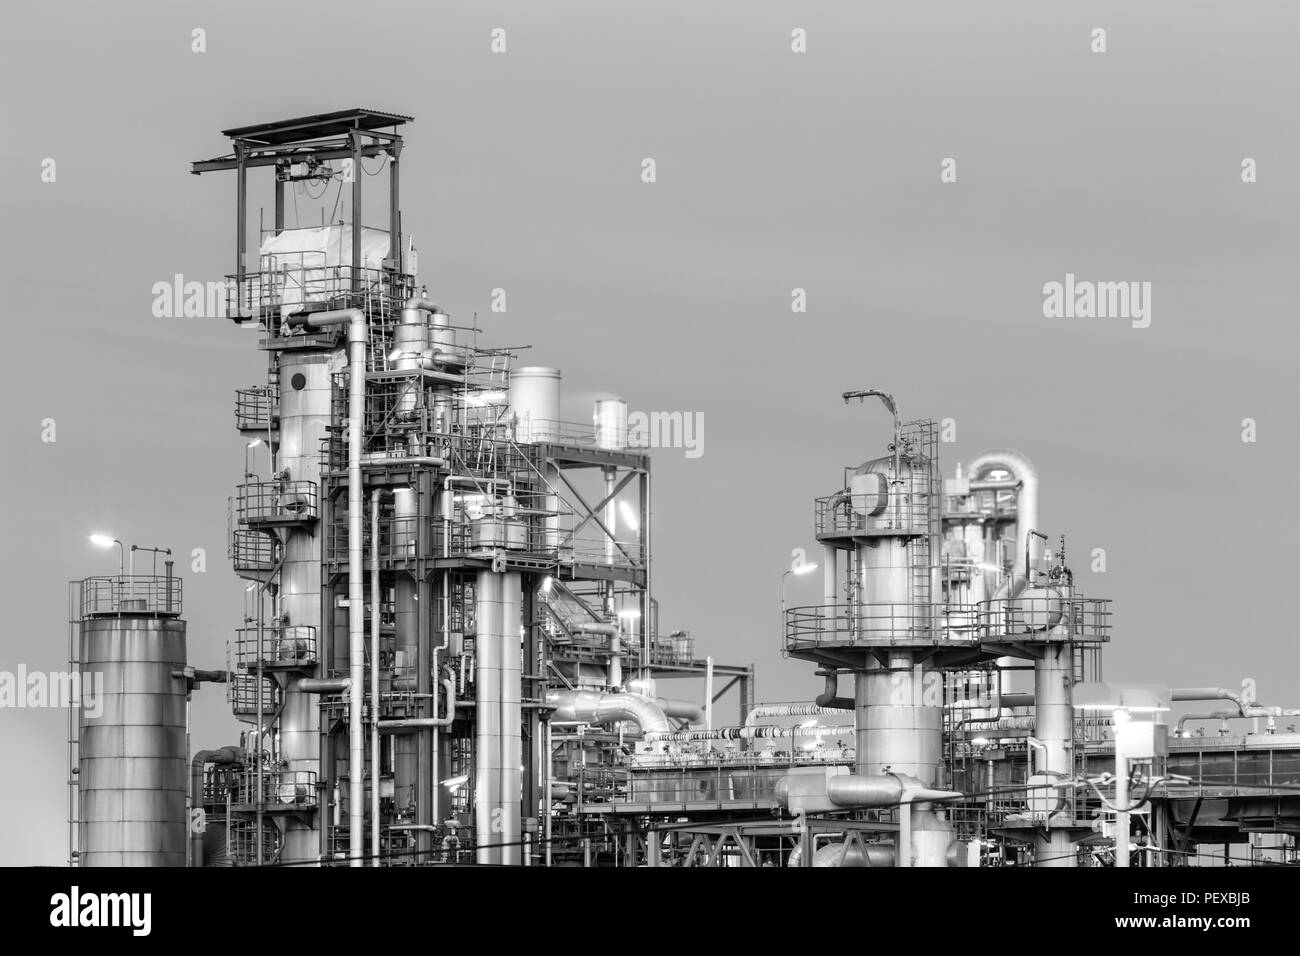 Tours de distillation des raffineries de pétrole dans la nuit en noir et blanc. Banque D'Images